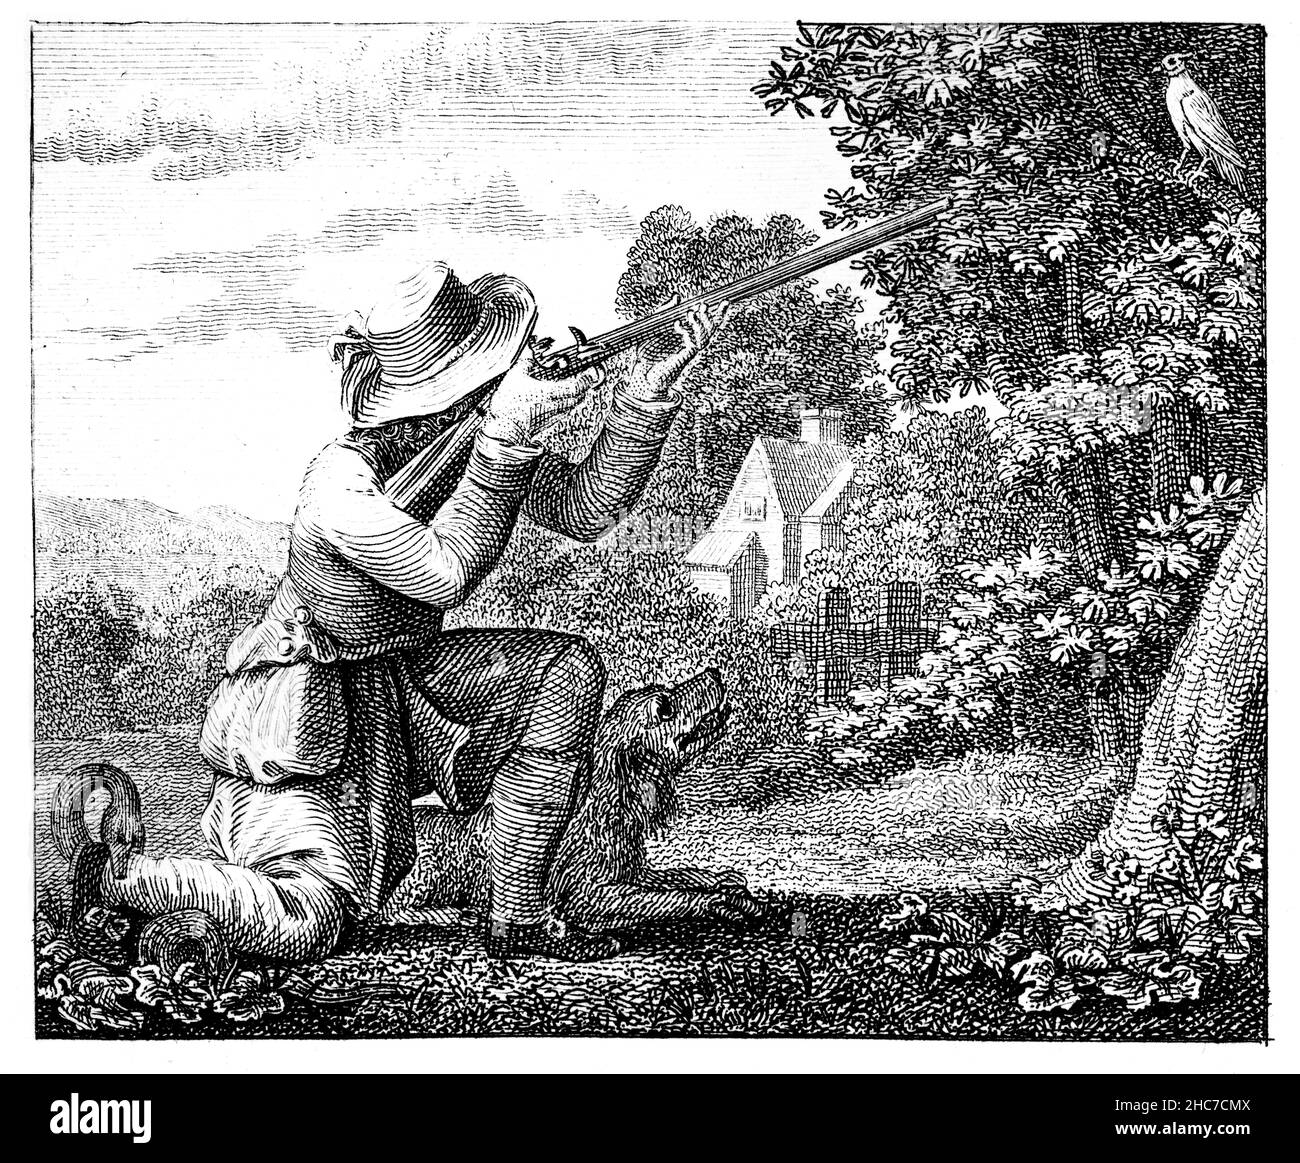 Illustrazione incisa del Fowler e del Ringdove, un racconto di cadere in una trappola preparata per altri, dalla prima edizione del 1793 di Aesop di Stockdale Foto Stock